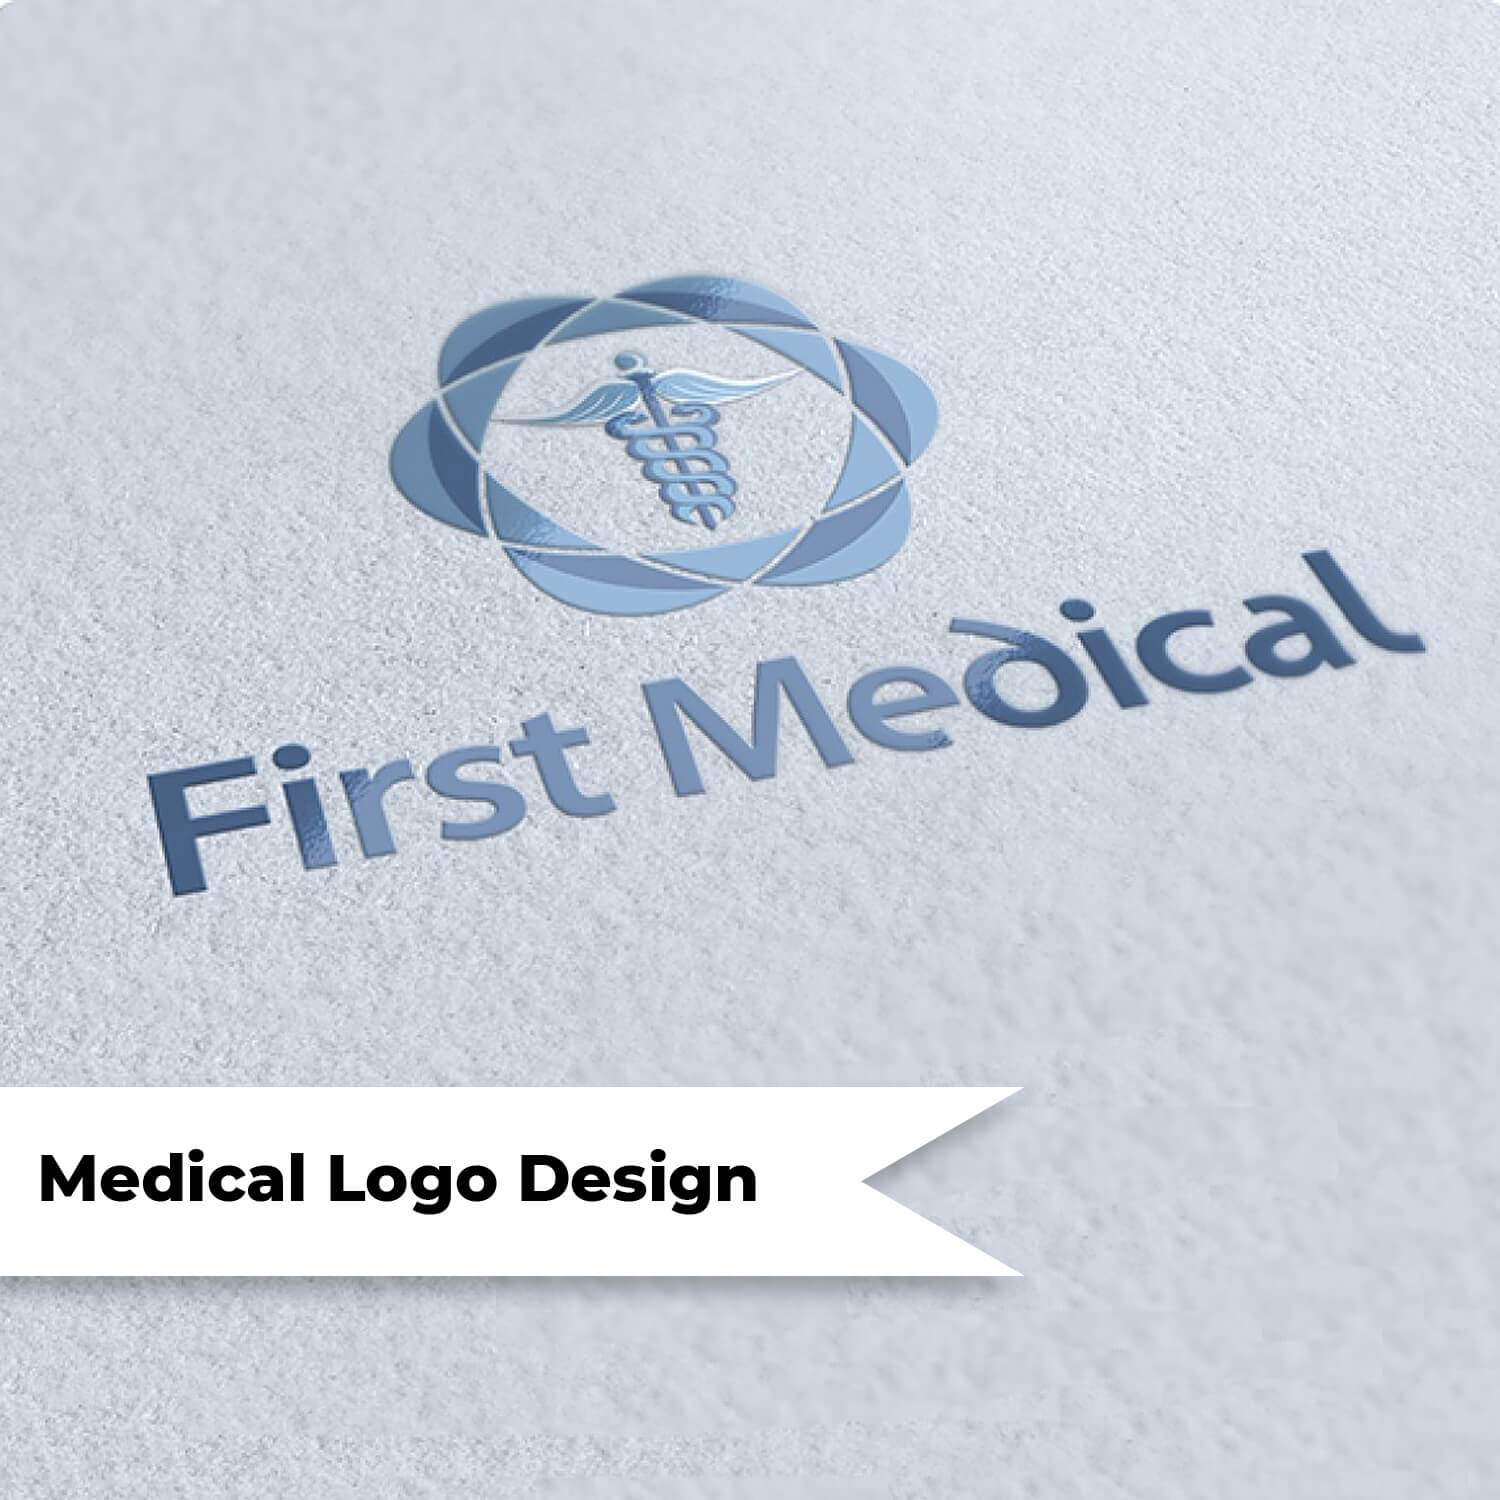 Medical logo design.